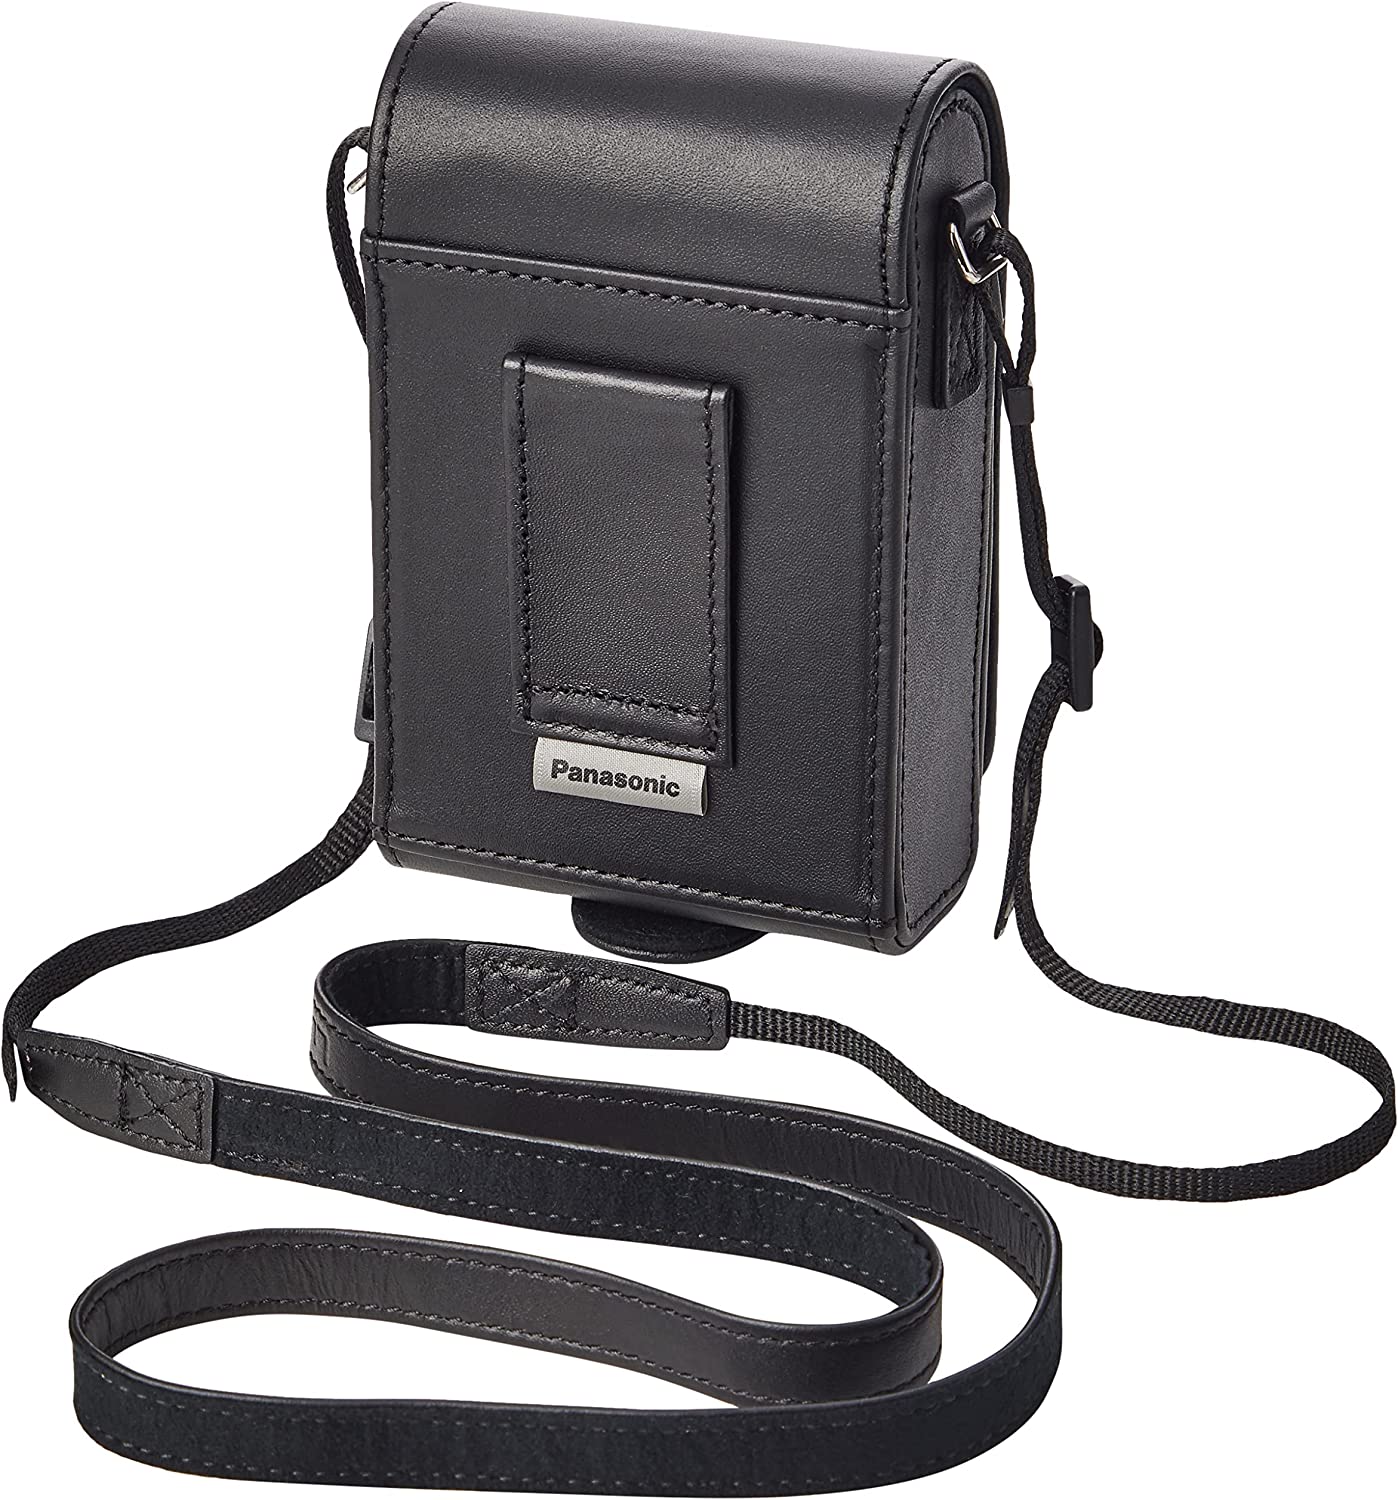 Panasonic lumix Leather Case for TZ100 Camera - Black